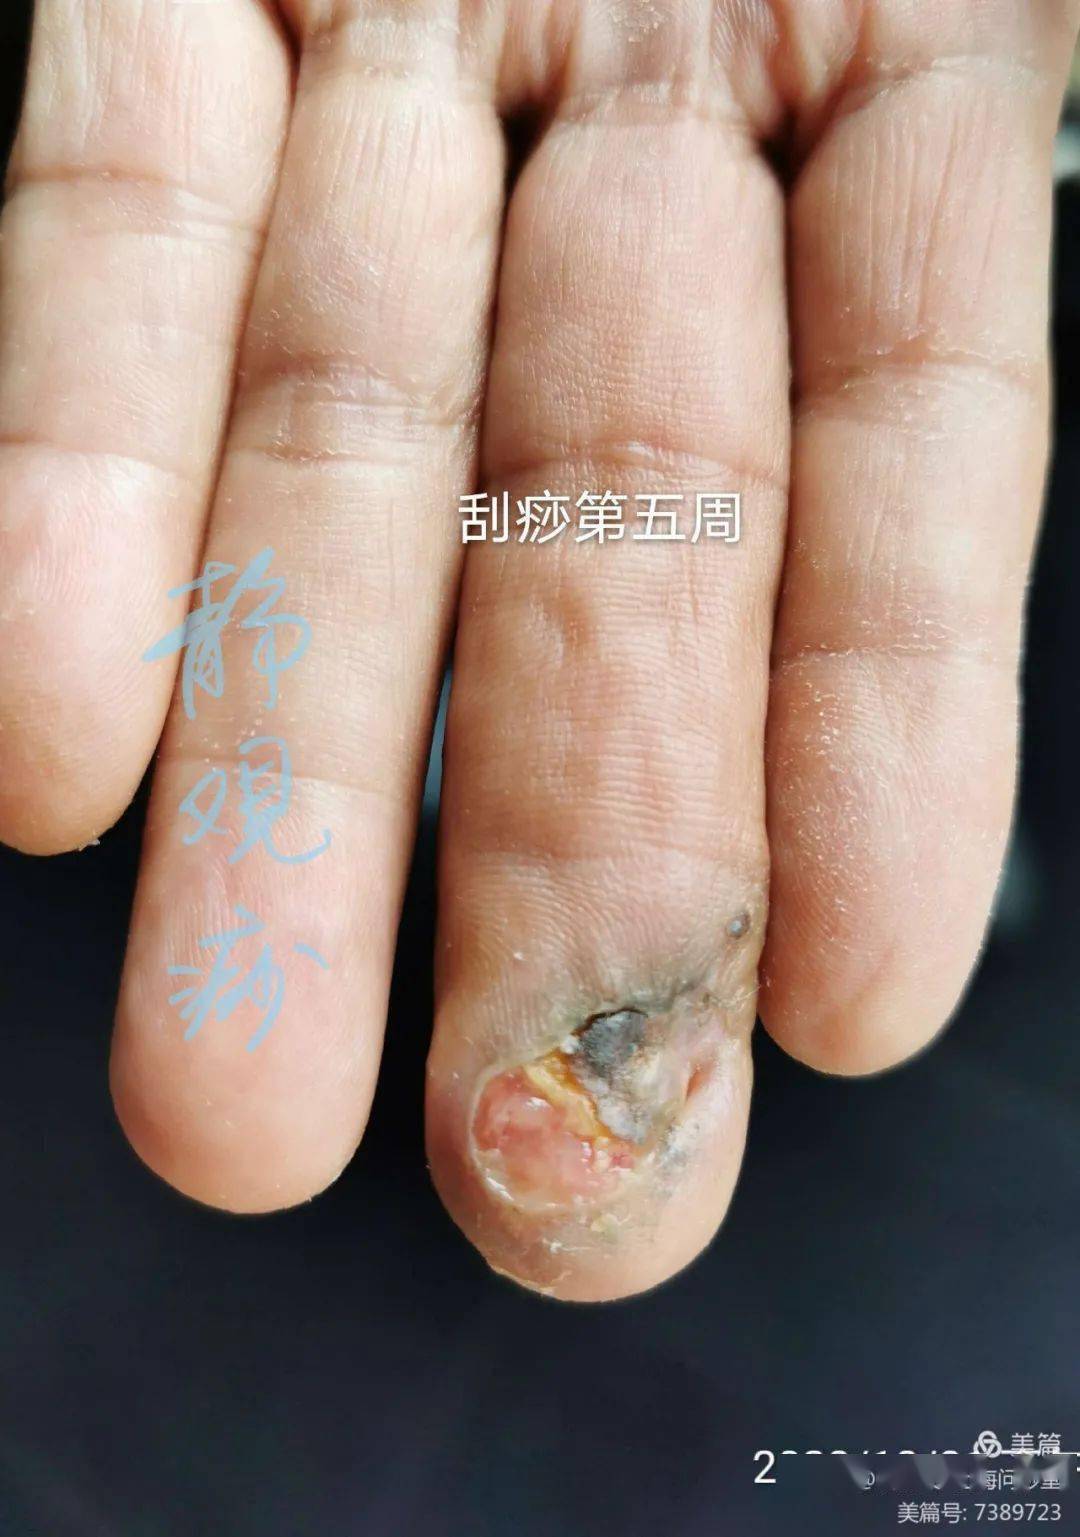 李氏砭法砭治糖尿病坏疽手指